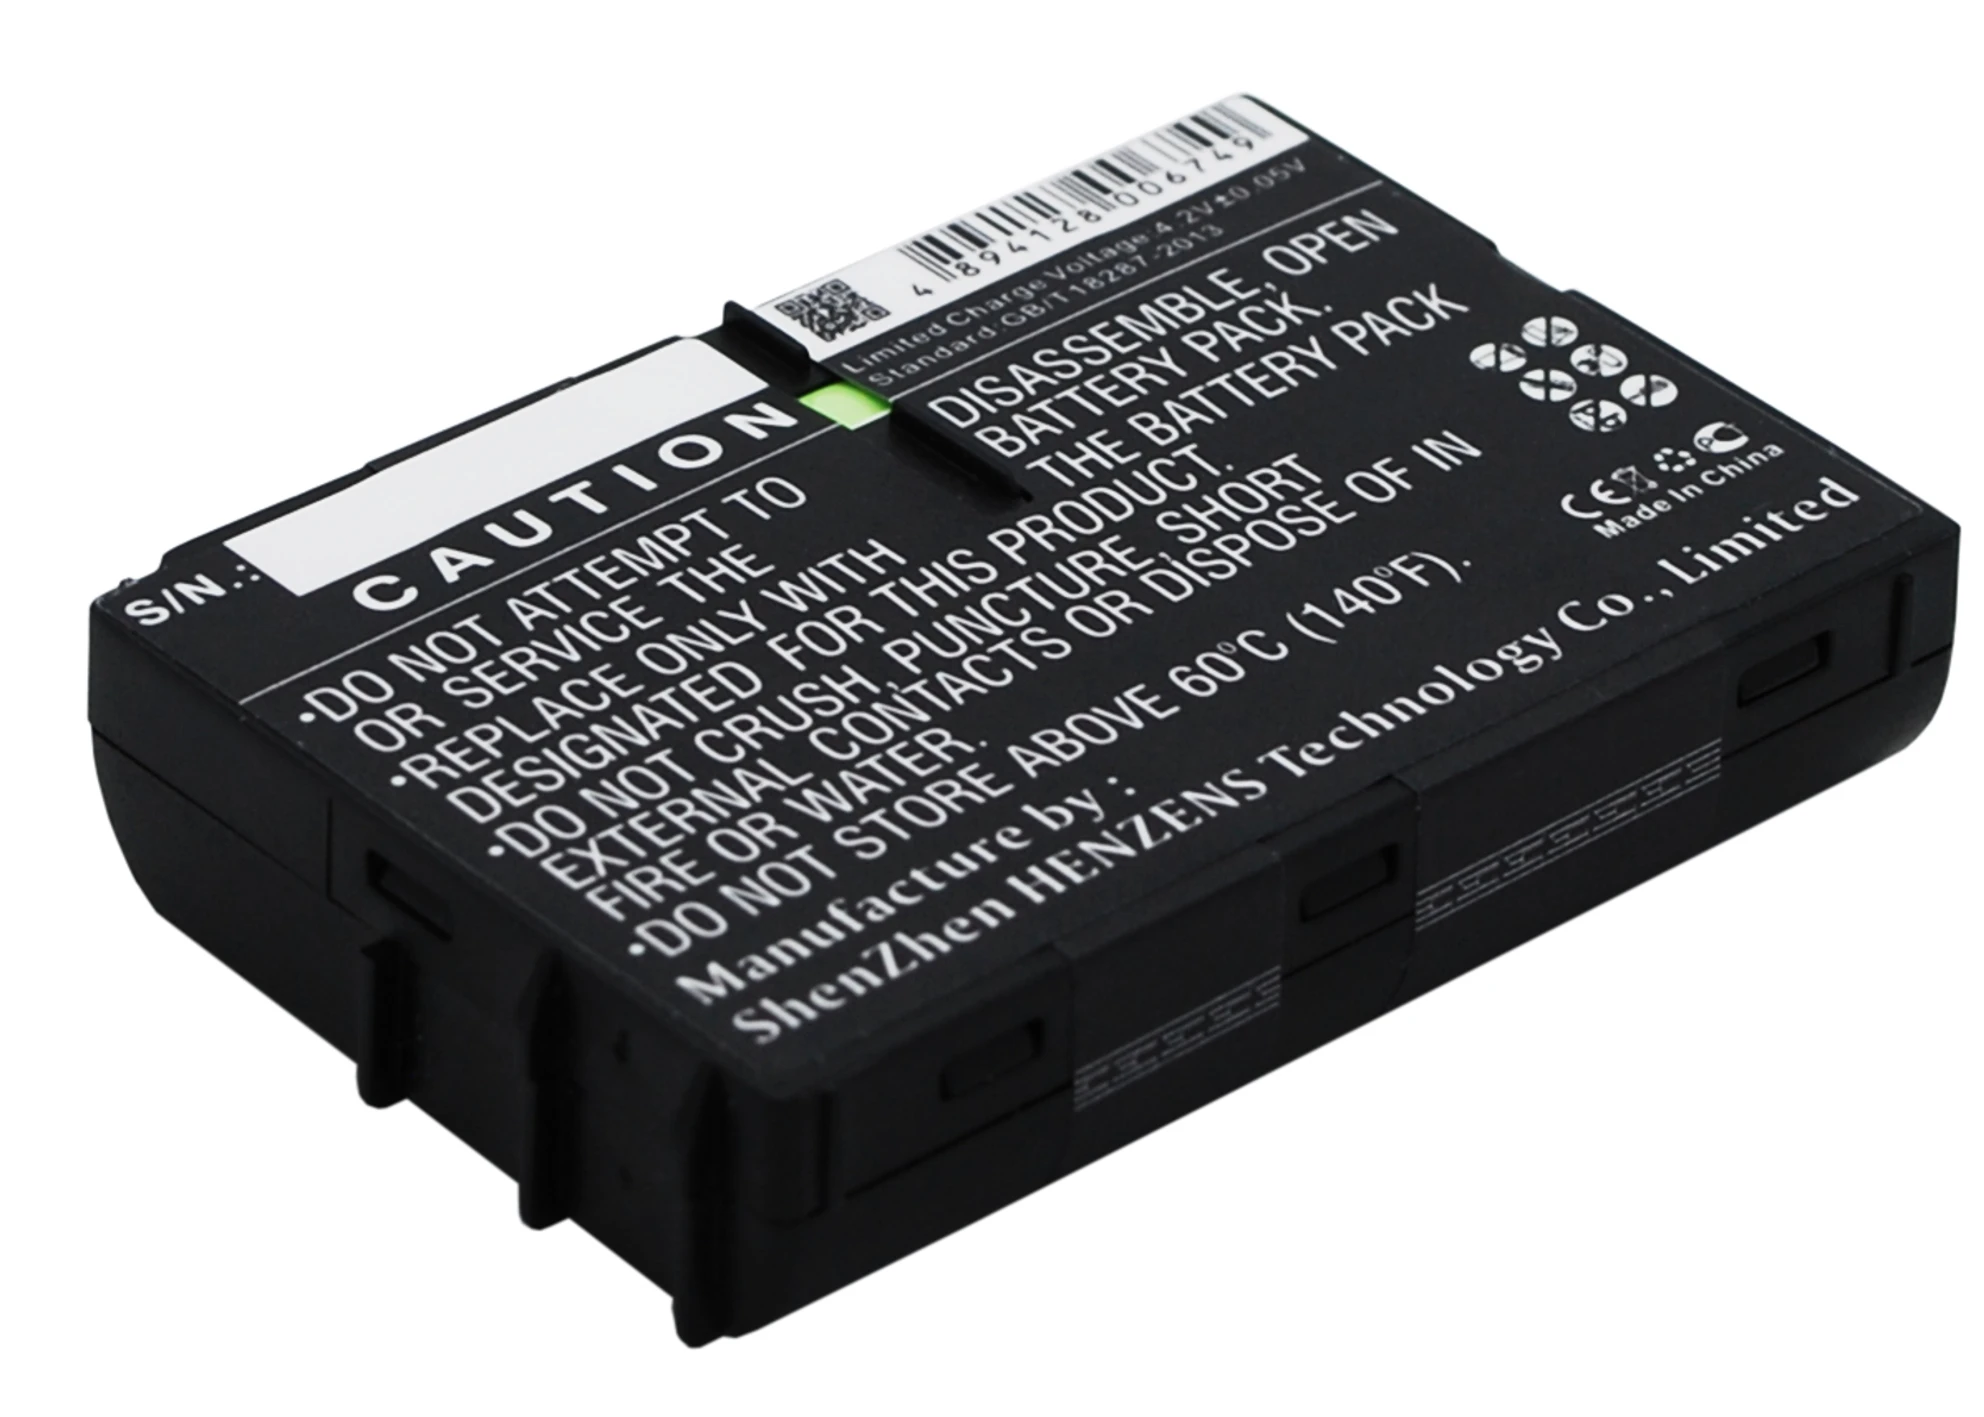 Cameron Sino 700mAh Batteri V30145-k1310-X103 til Siemens C25, C25, Magt, C2588, C25e, C28